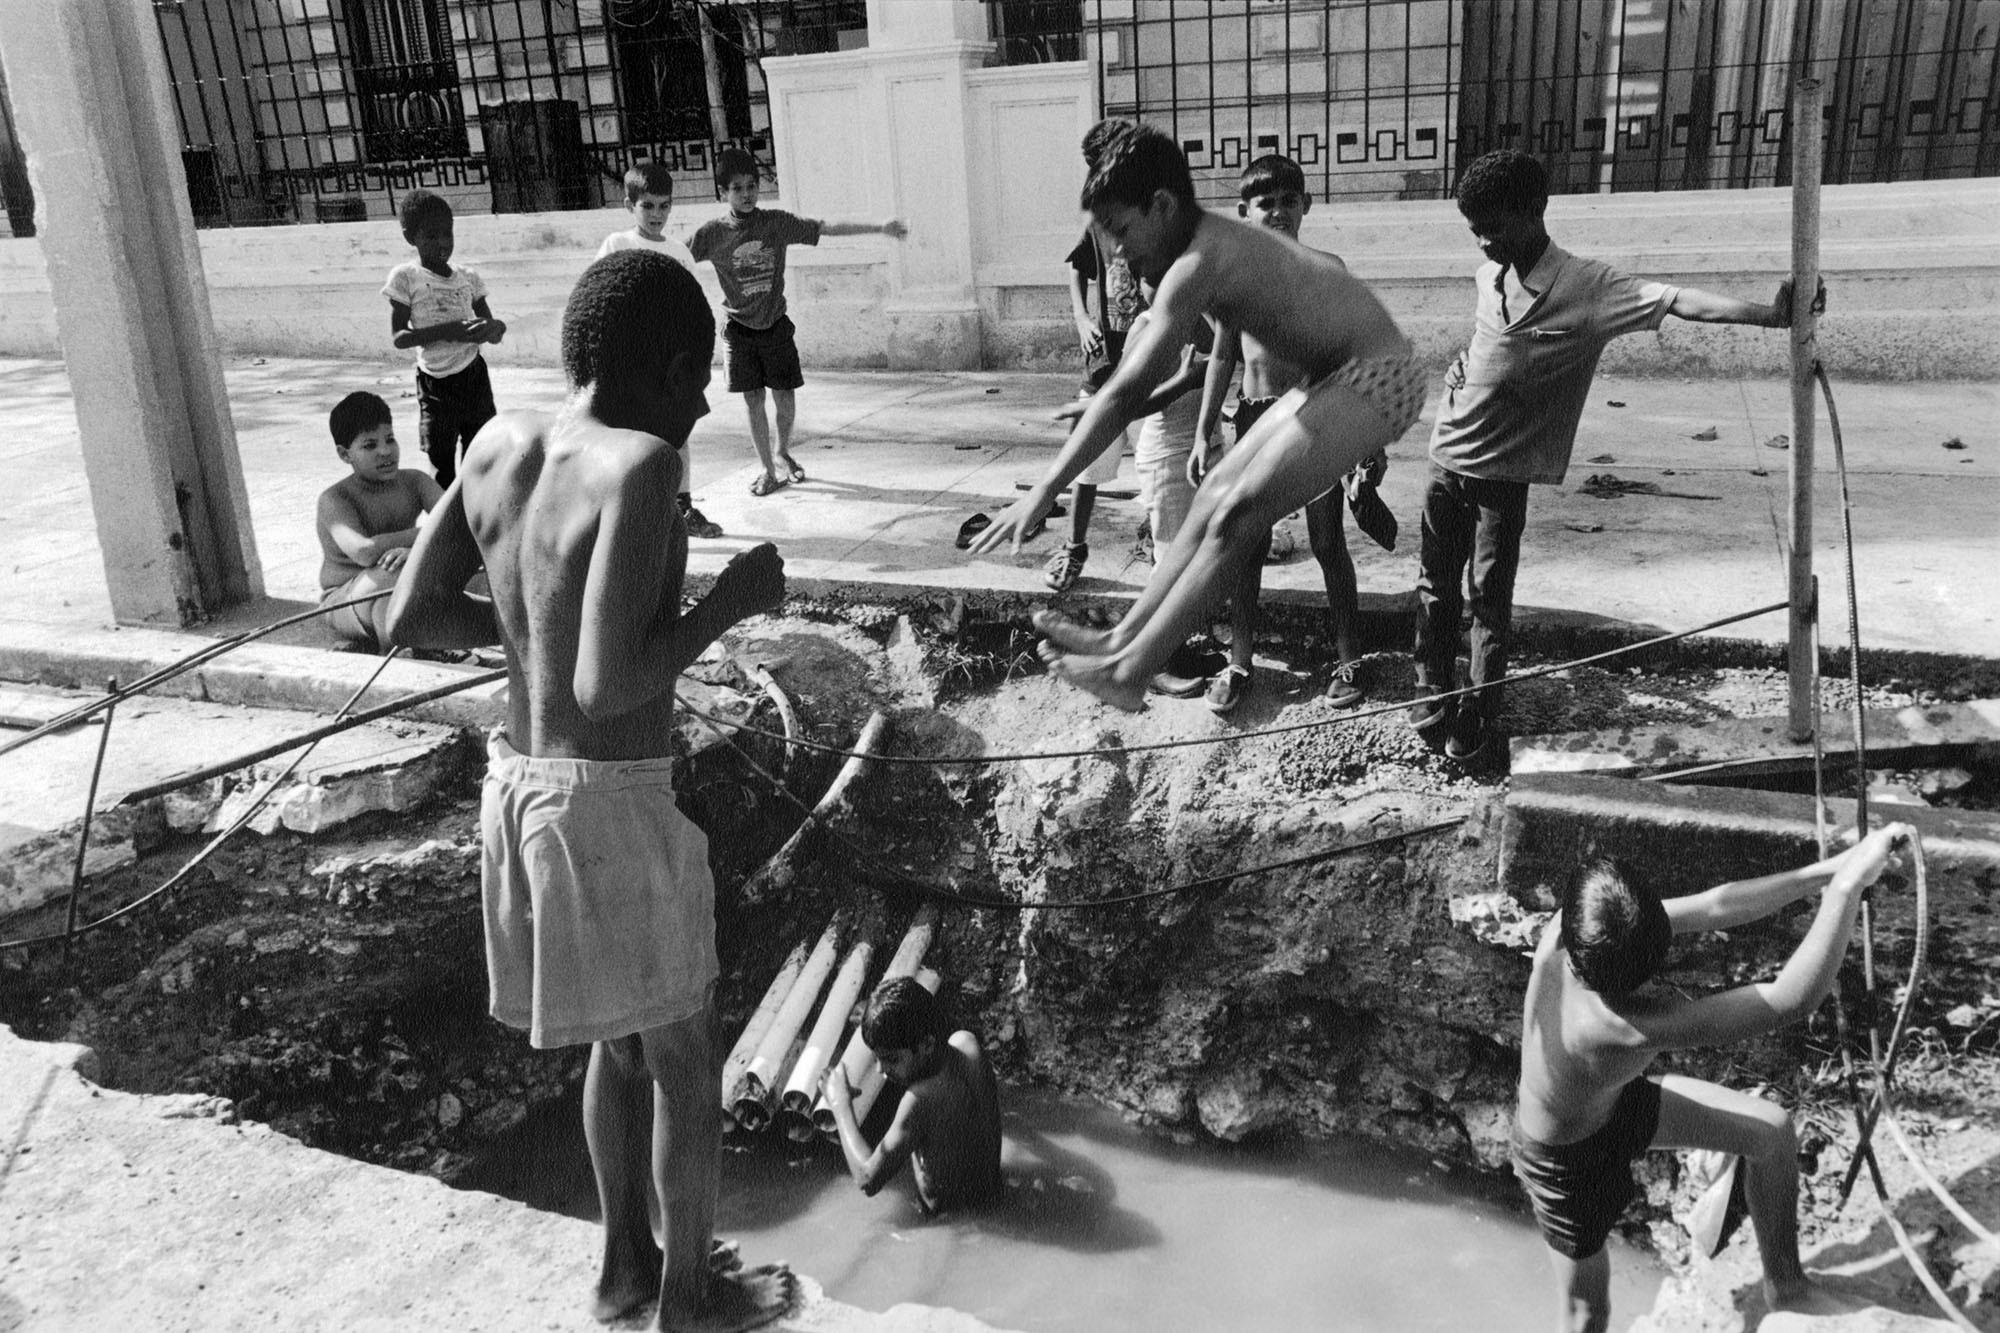 Street Pool, Havana 1998